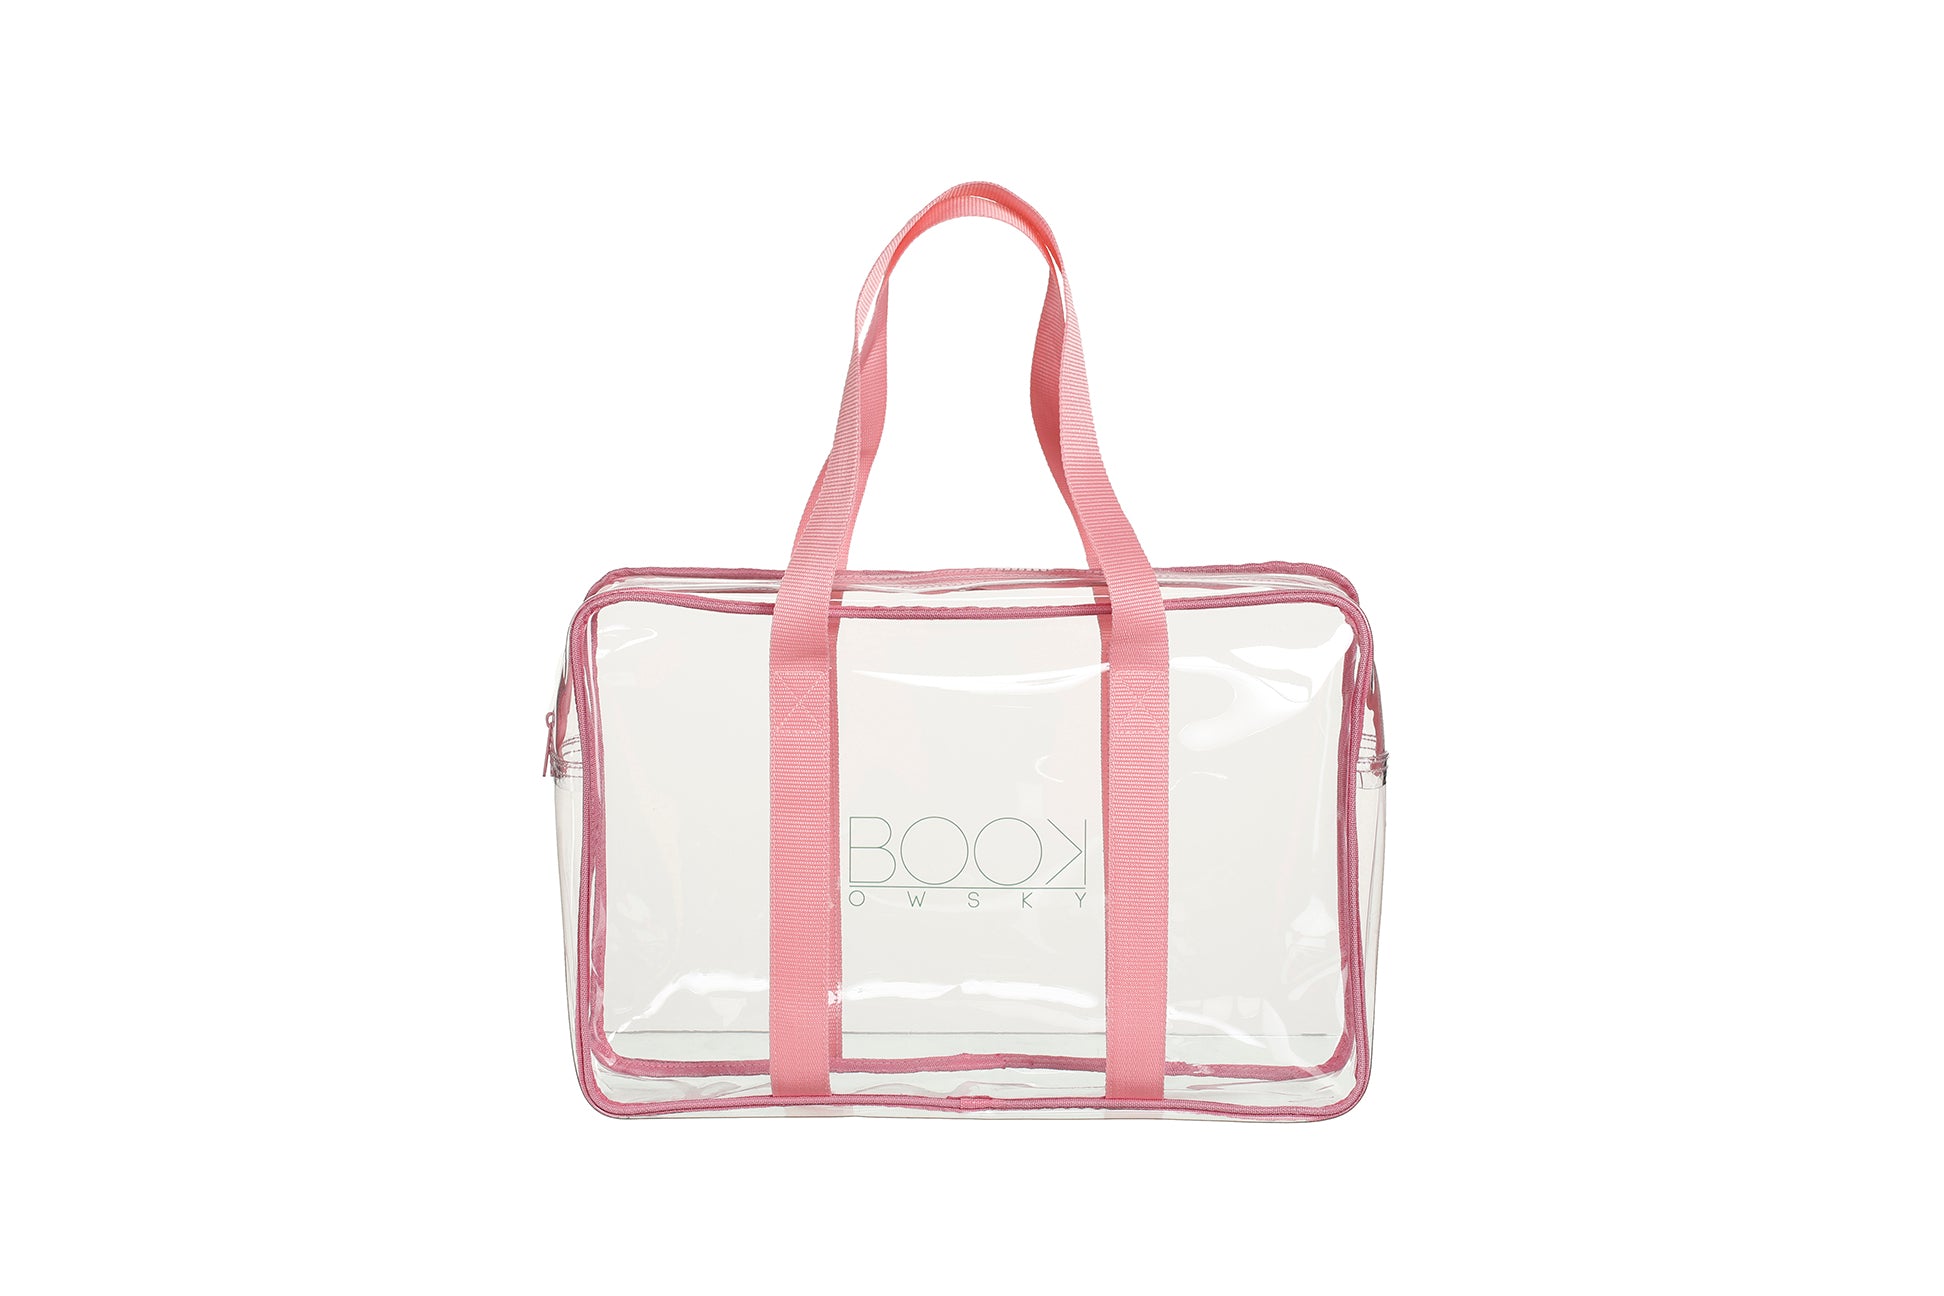 Durchsichtige transparente Bibtasche Unitasche Bibliothekstasche bibbag uniwise rosa PVC bag Longhandle 